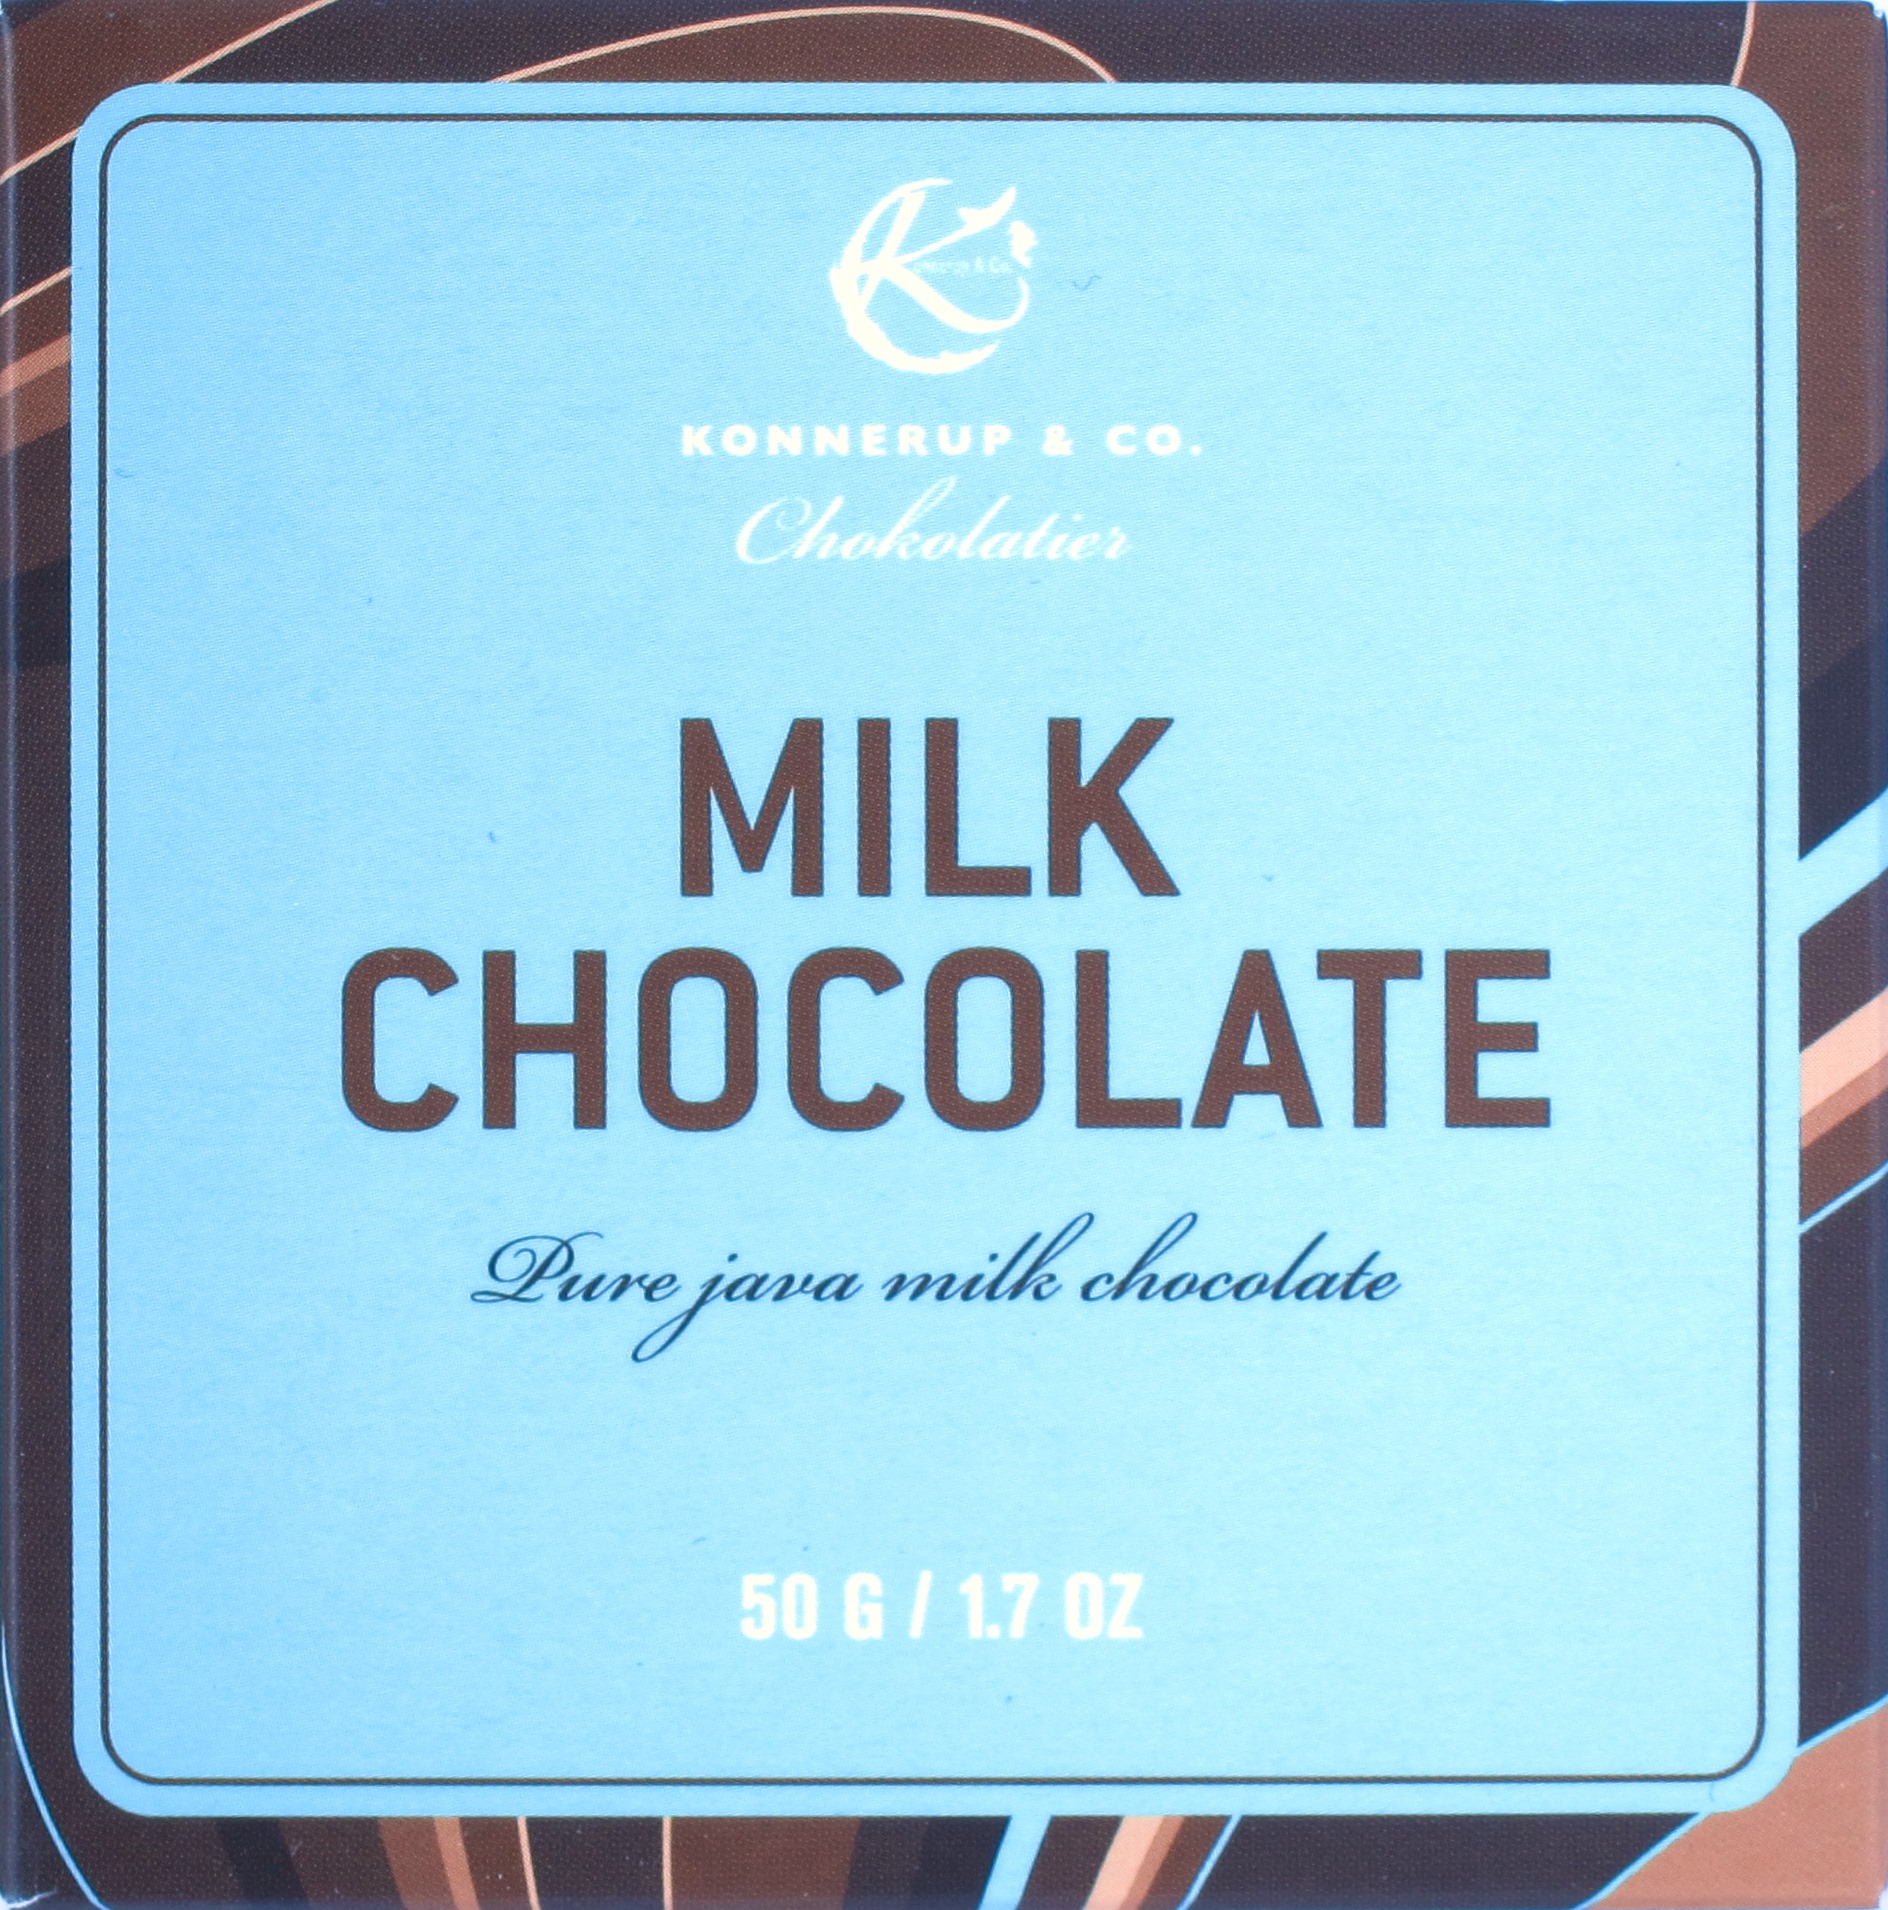 Vorderseite: Konnerup "Milk Chocolate"